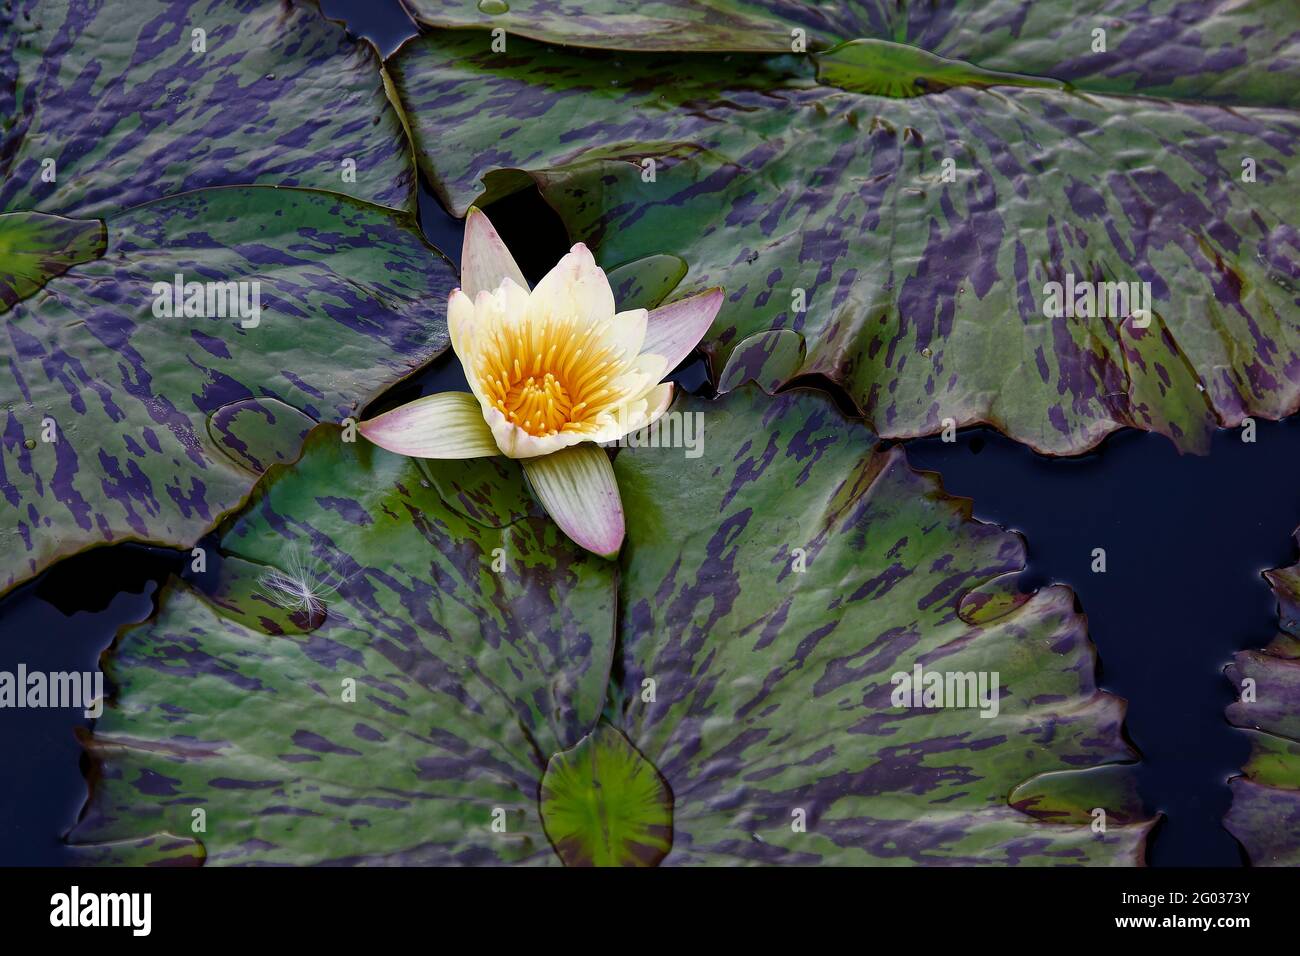 Seerose, blassgelb, dunkelgelbe Mitte, zweifarbige grüne Blätter, Nahaufnahme, Natur, kultivierte Blume, Stockfoto